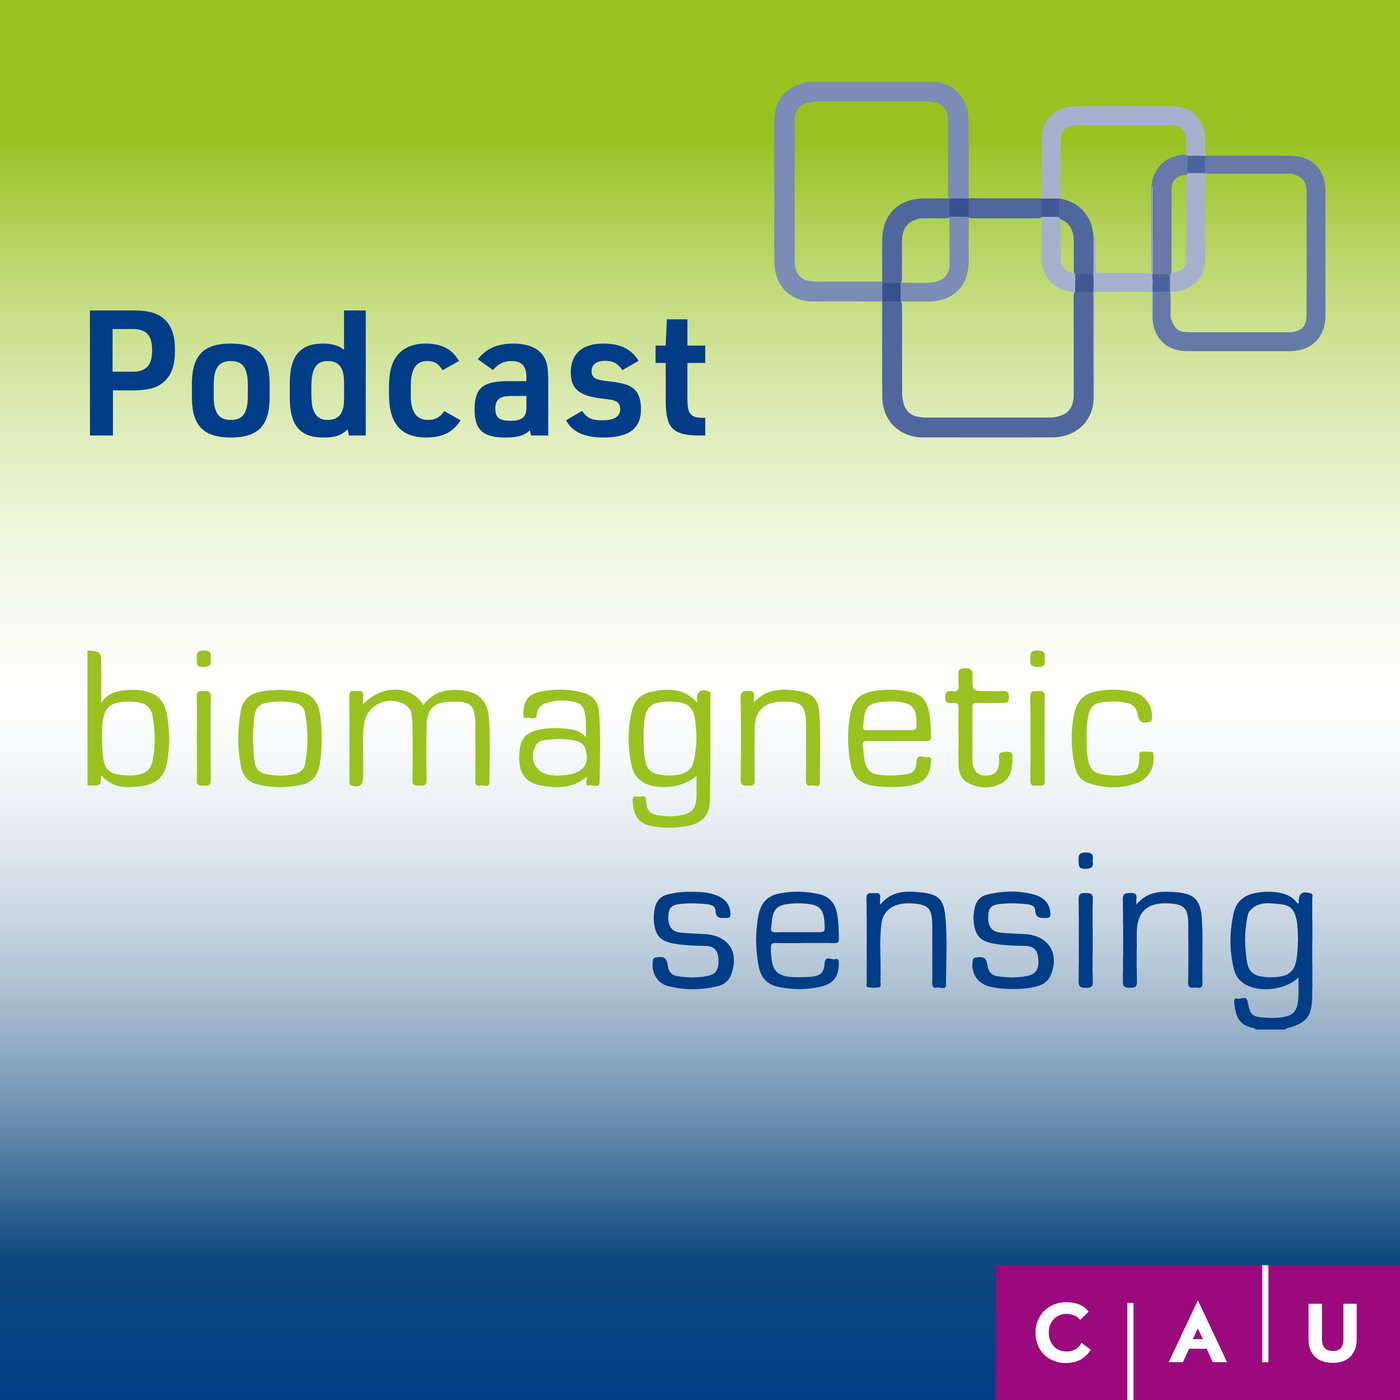 #10 Biomagnetic Sensing: Die lustigen Anekdoten mit Schutzkleidung